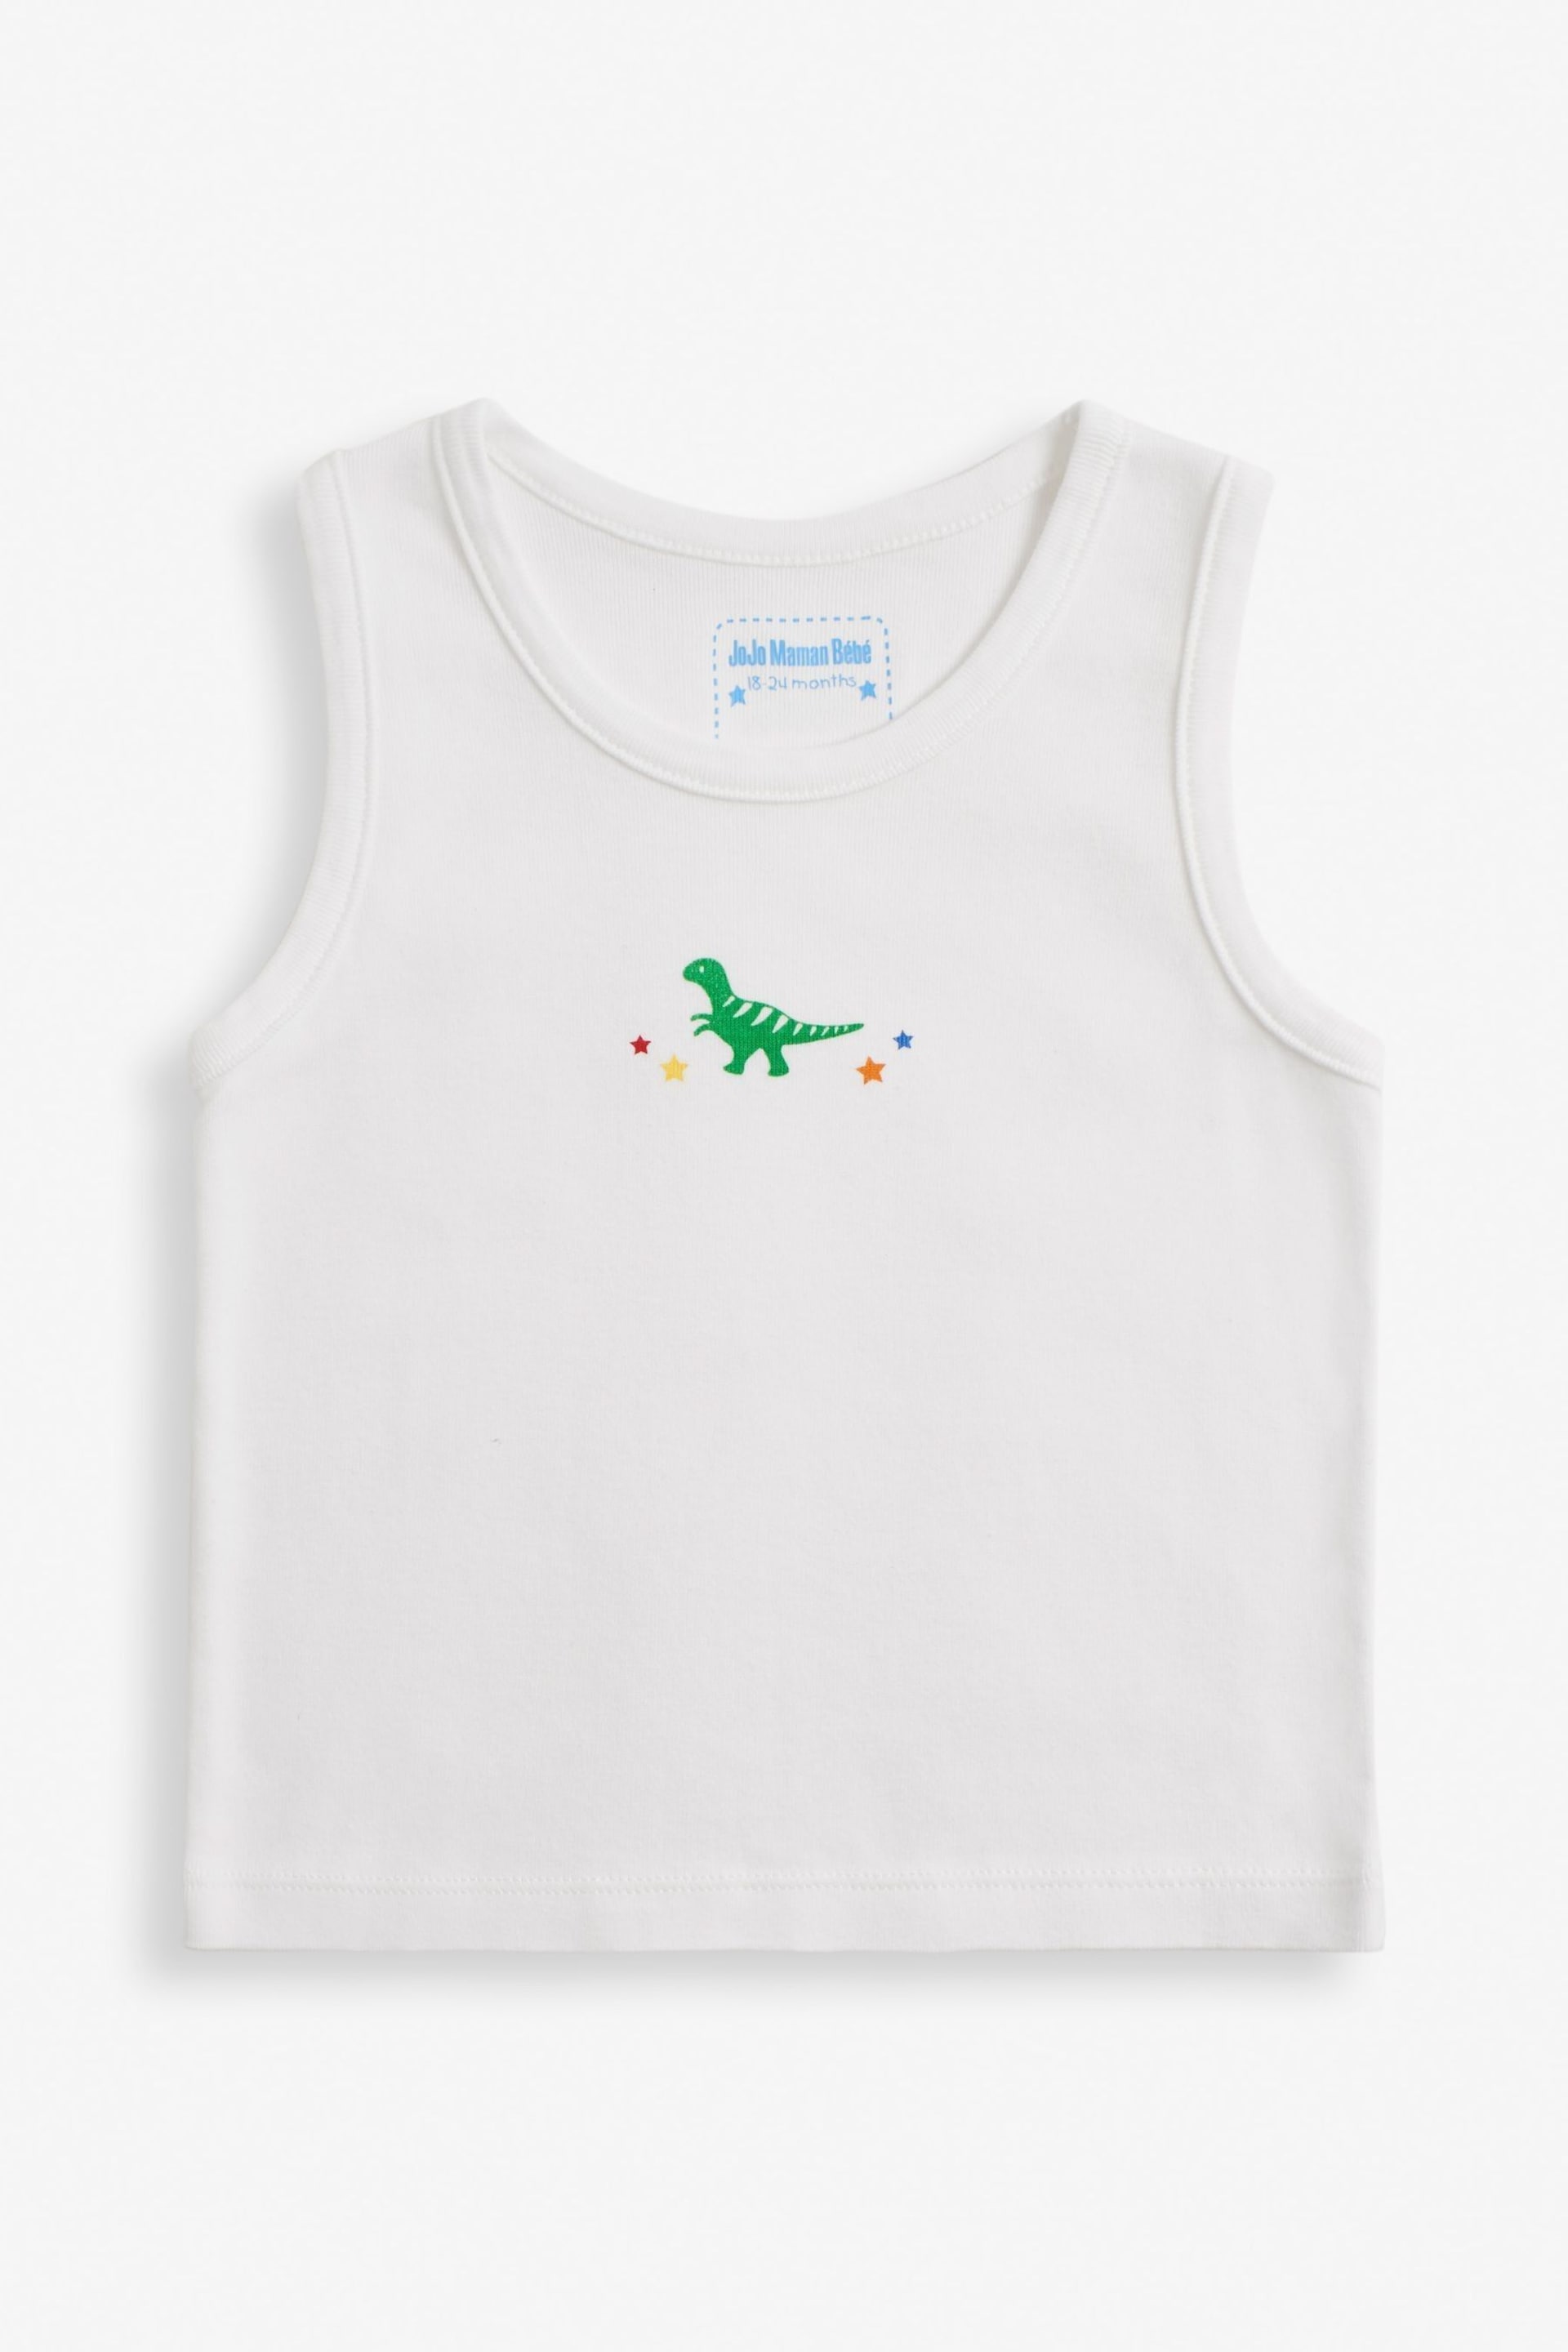 JoJo Maman Bébé Dinosaur 3-Pack Boys' Vest Set - Image 3 of 5